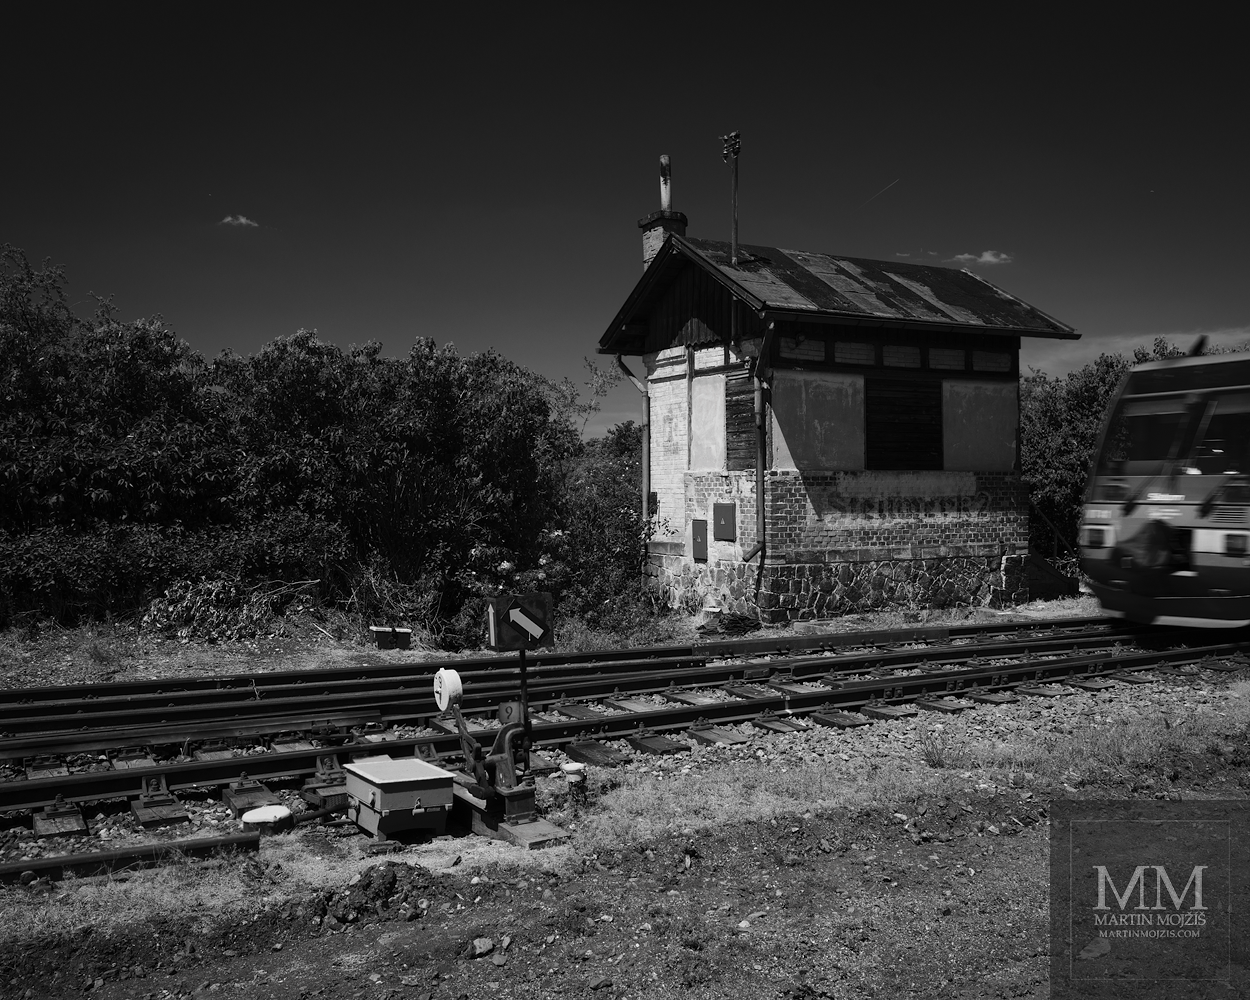 Historický železniční strážní domek, výhybka a projíždějící vlak. Umělecká černobílá velkoformátová fotografie s názvem DEVÁTÁ VÝHYBKA. Fotograf Martin Mojžíš.